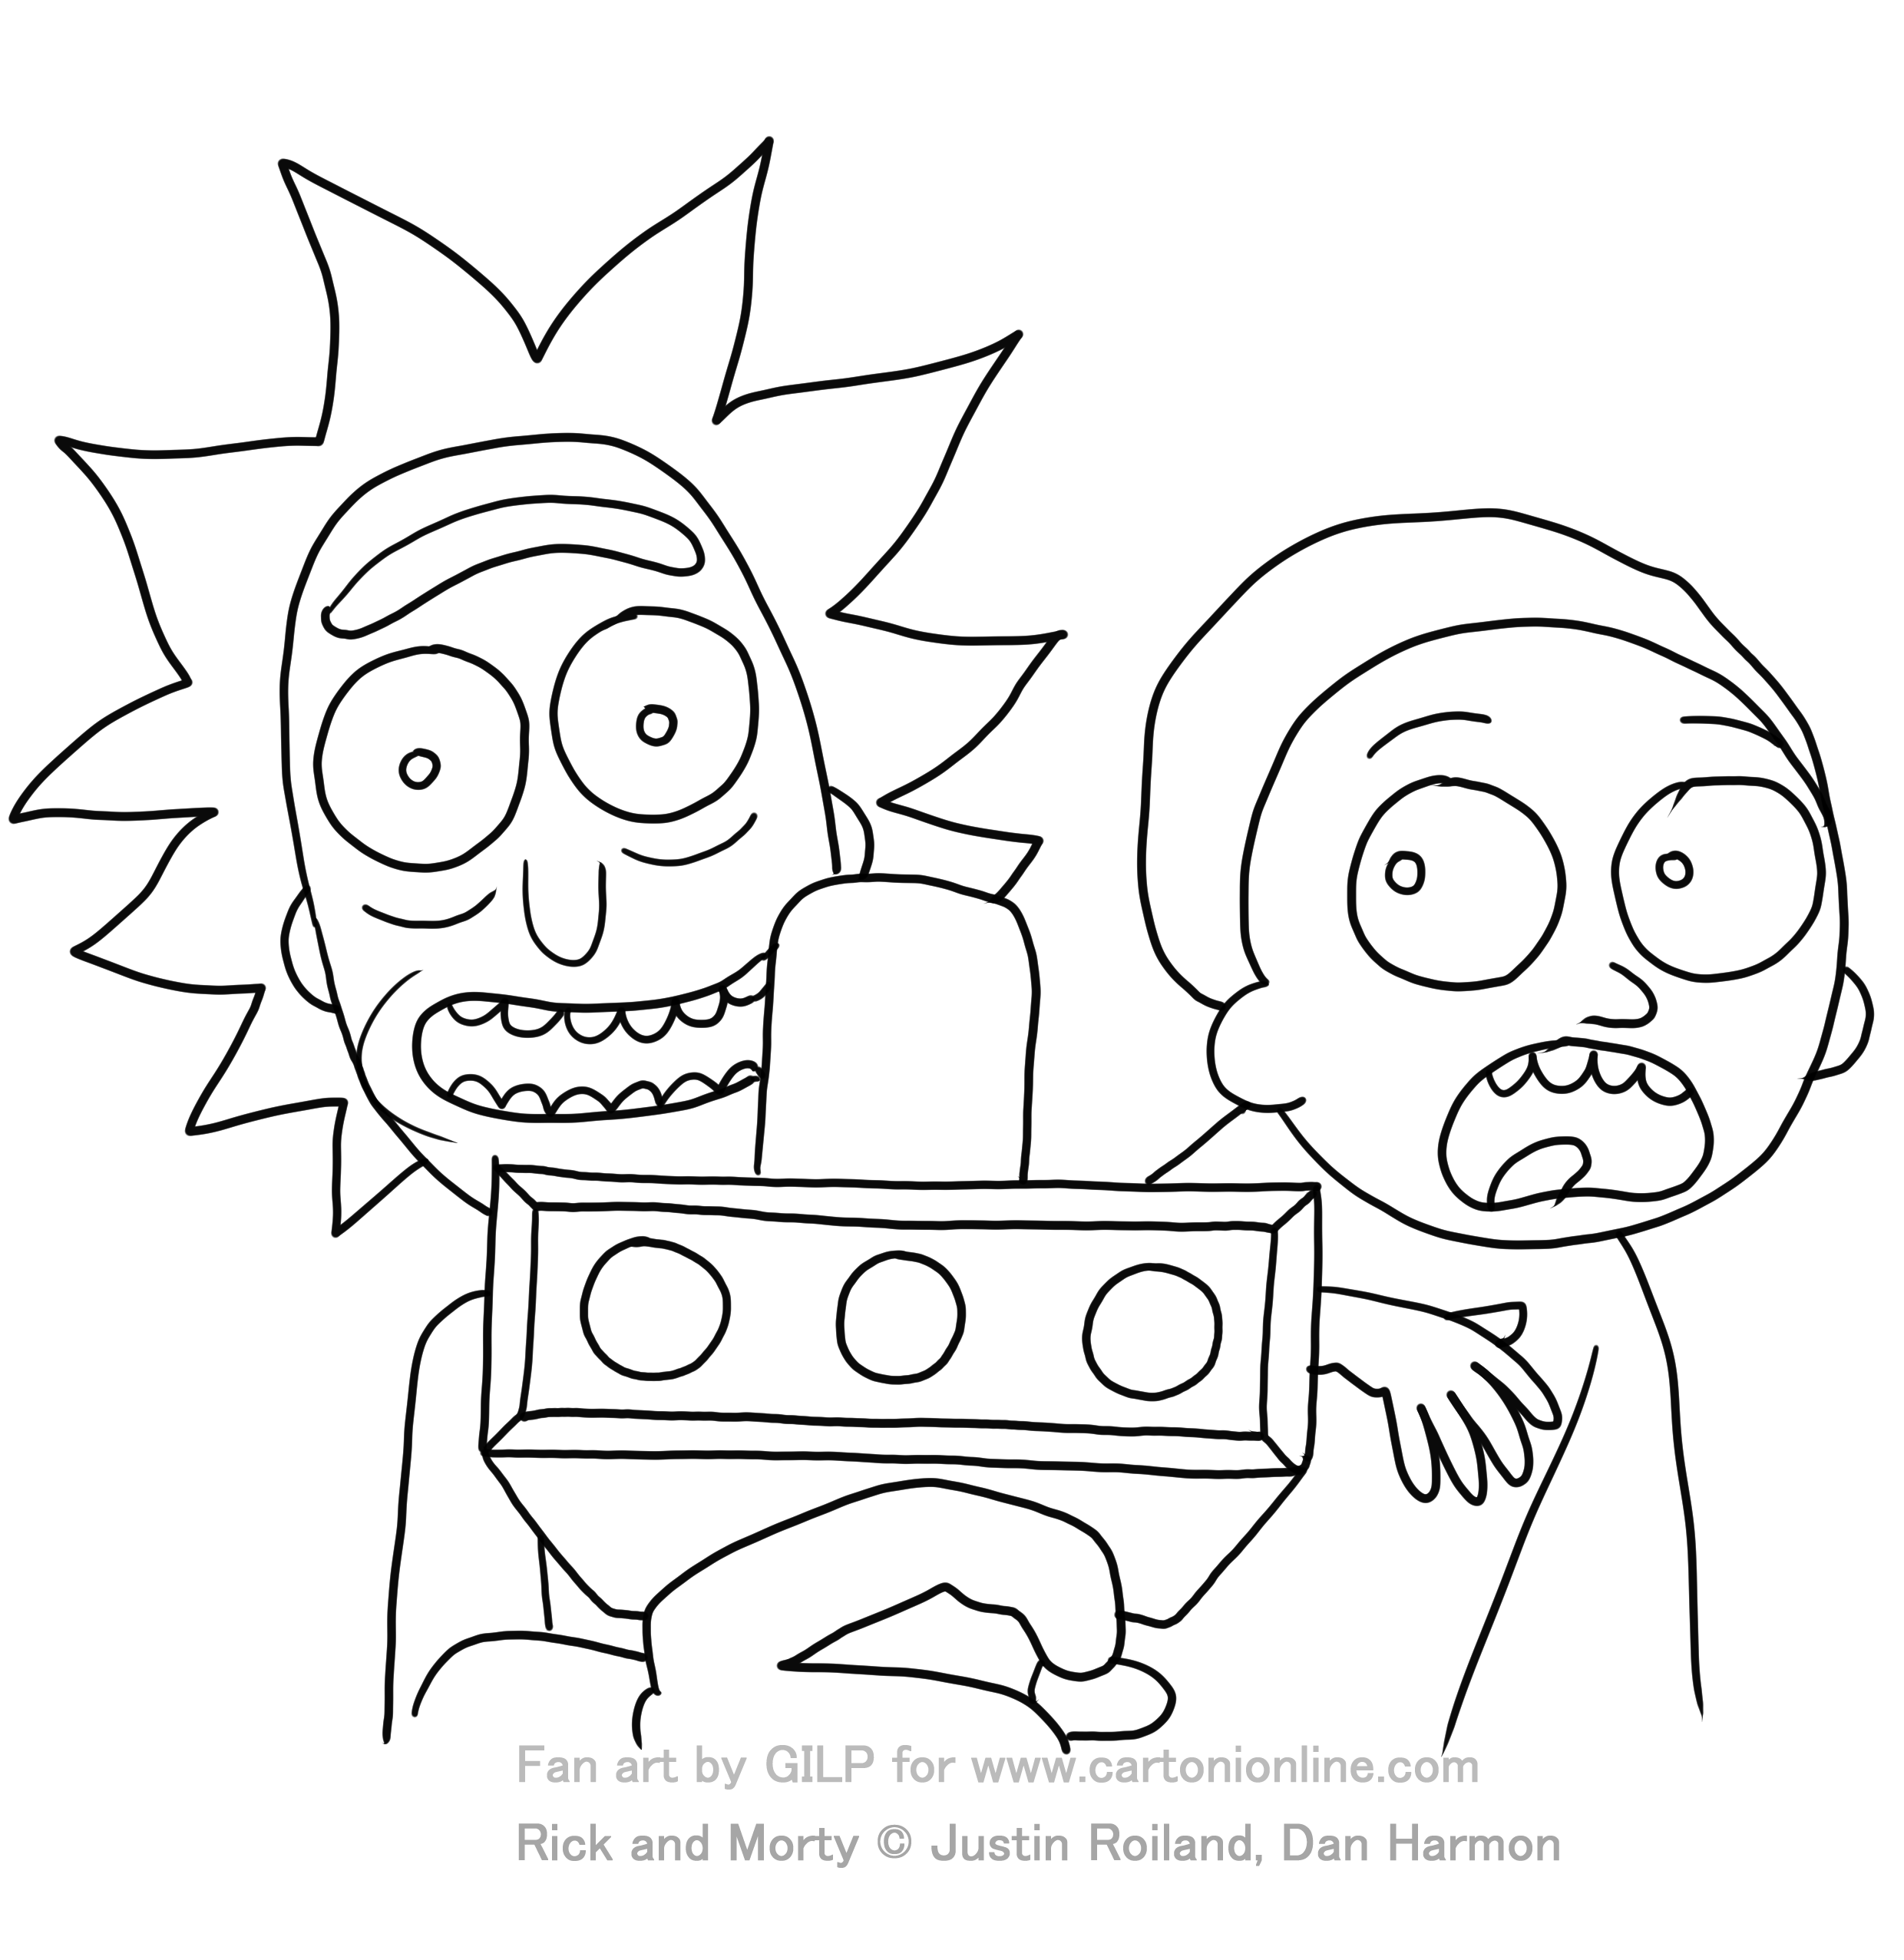 Rick et Morty 04 de Rick et Morty à imprimer et colorier